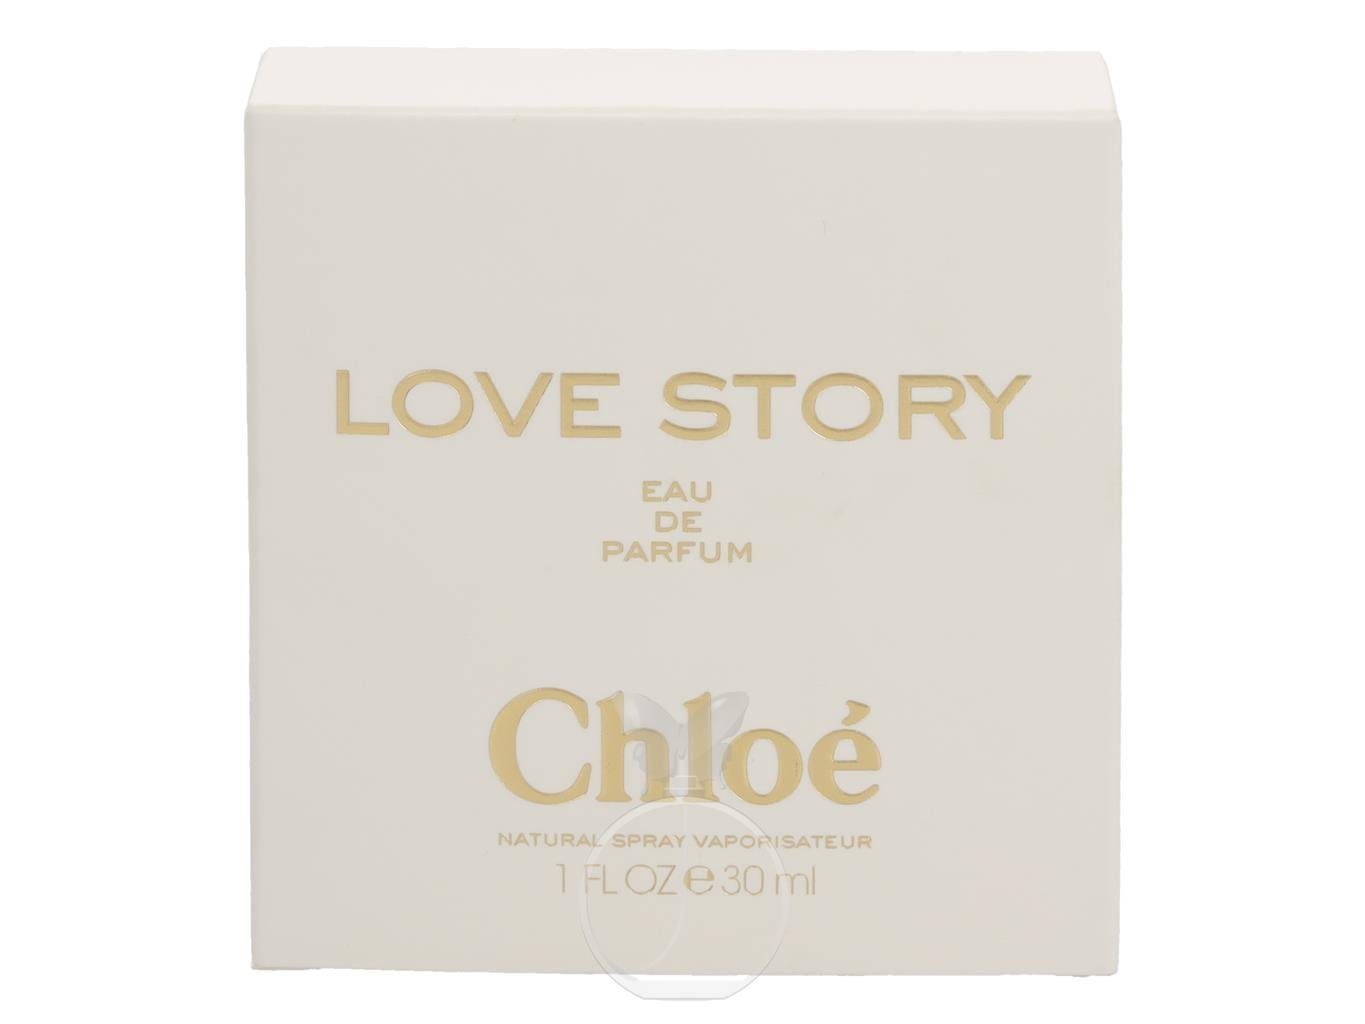 Eau Parfum de ml, 1-tlg. de Love Story Chloe Chloé Parfum 30 Eau